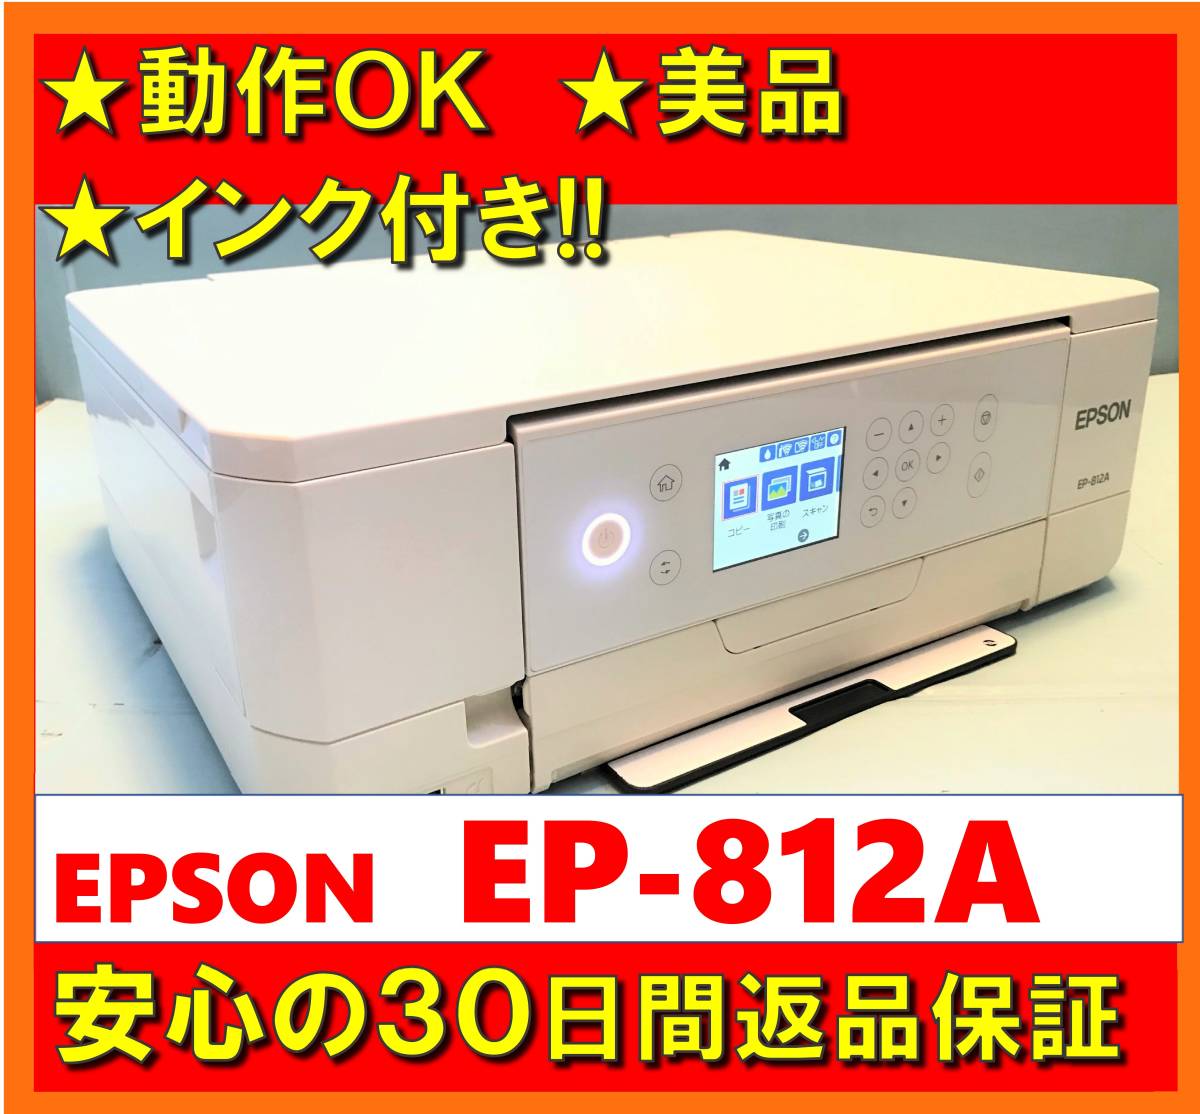 感謝価格】 A4 EPSON エプソン☆ プリンター ヘッド有り プリンター